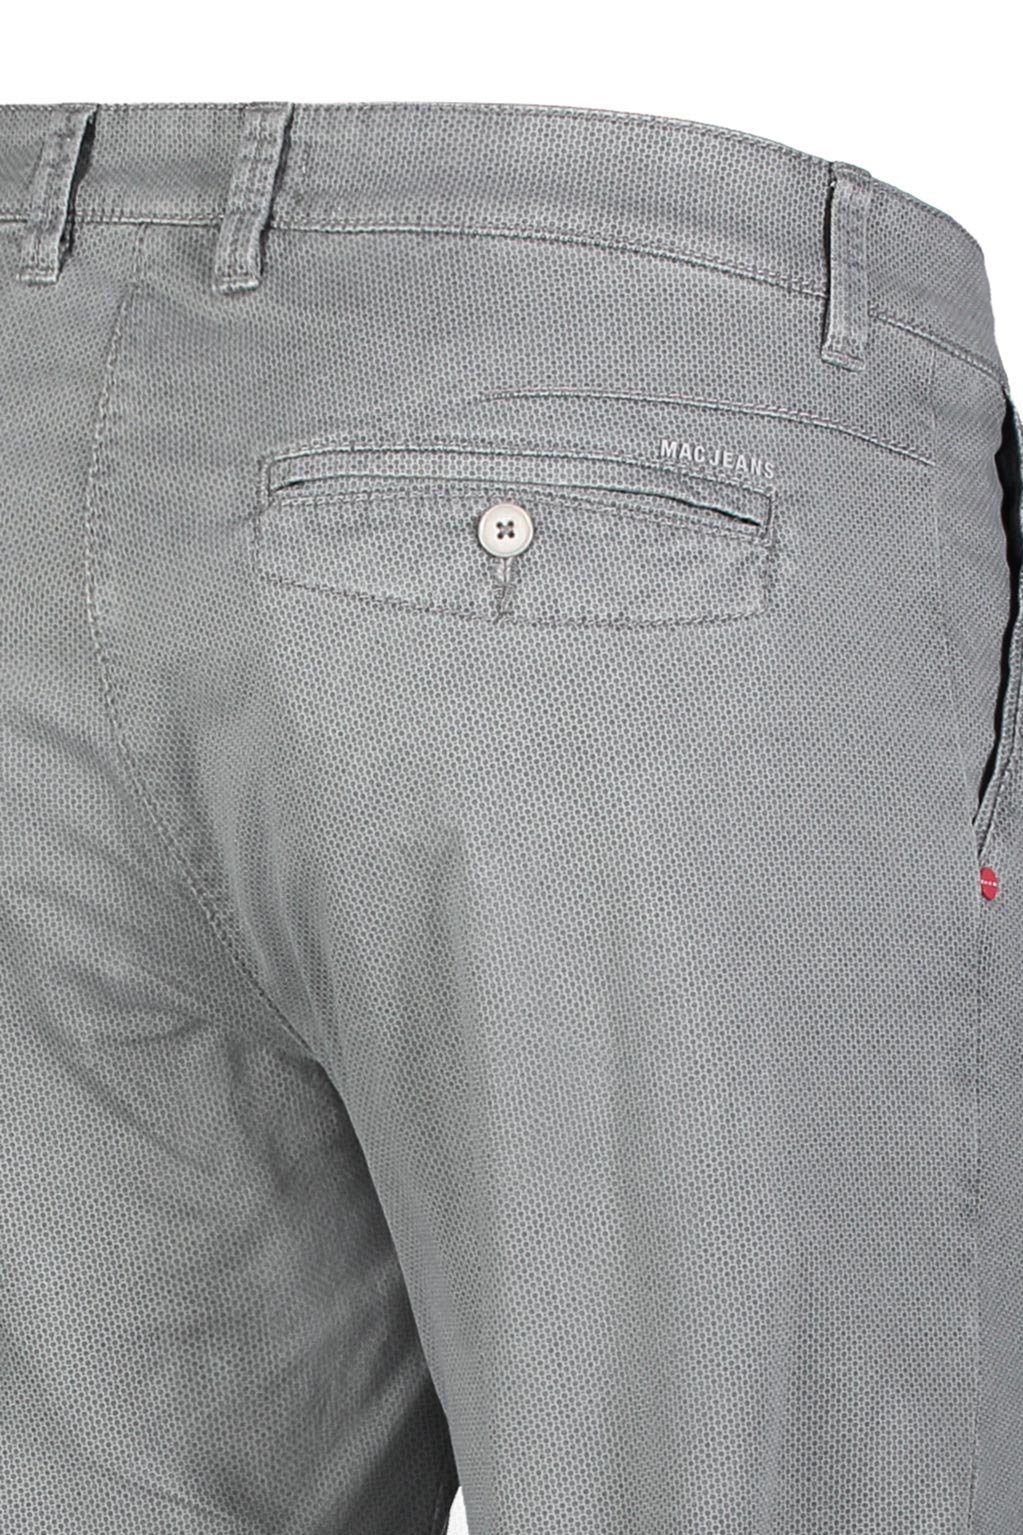 MAC 5-Pocket-Jeans blue LENNOX steel 6365-00-0728L printed 074B MAC